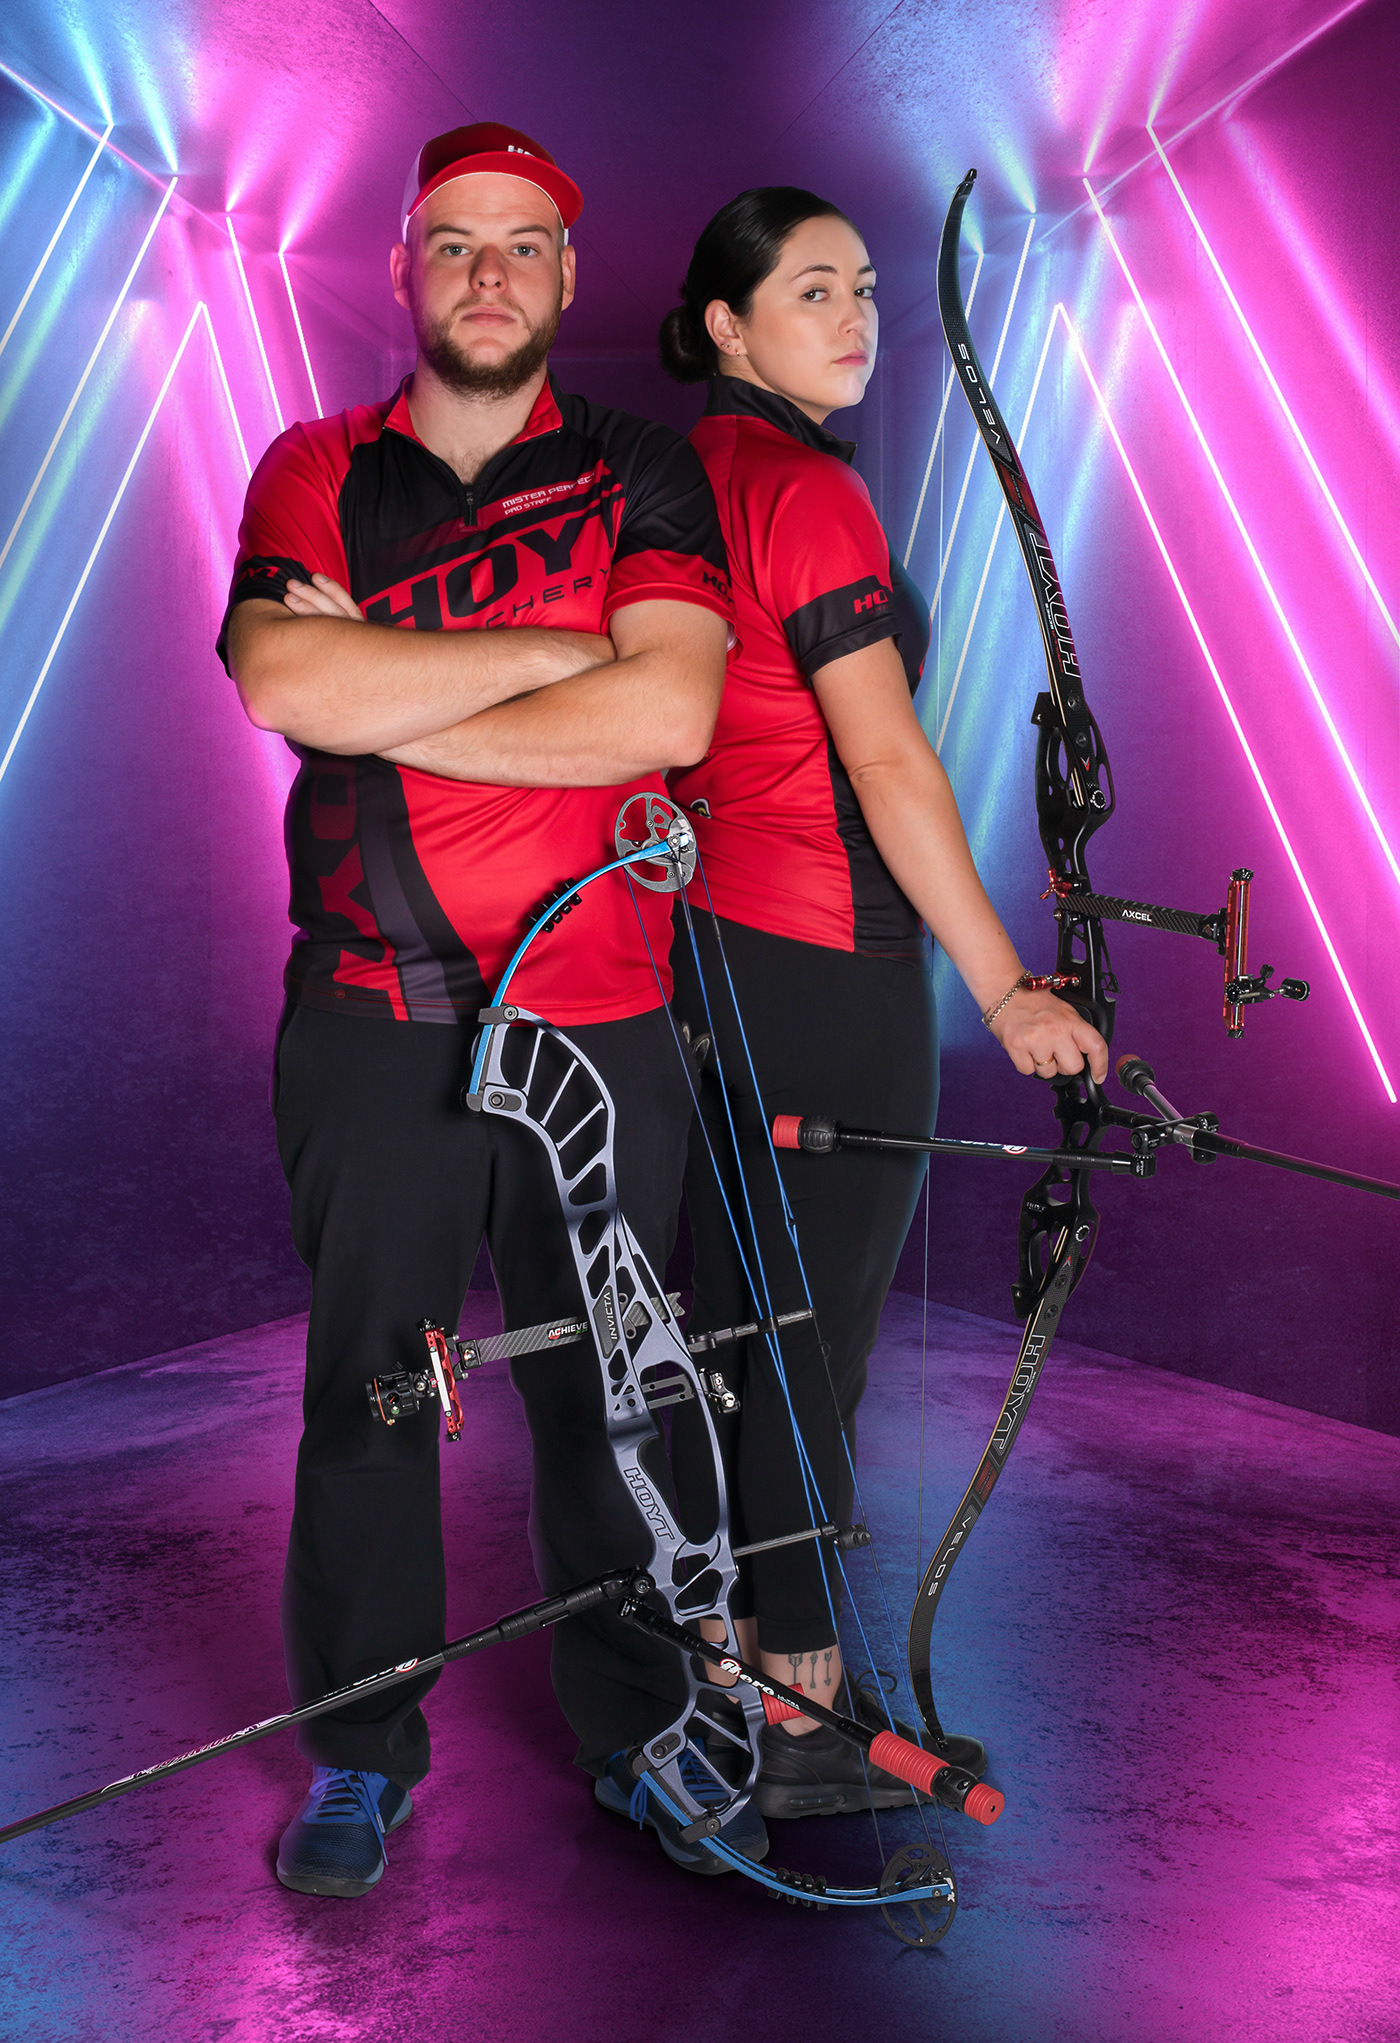 Archery hoyt photoshot couple Love sport JVD-Archery compound recurve Hoyt 2020